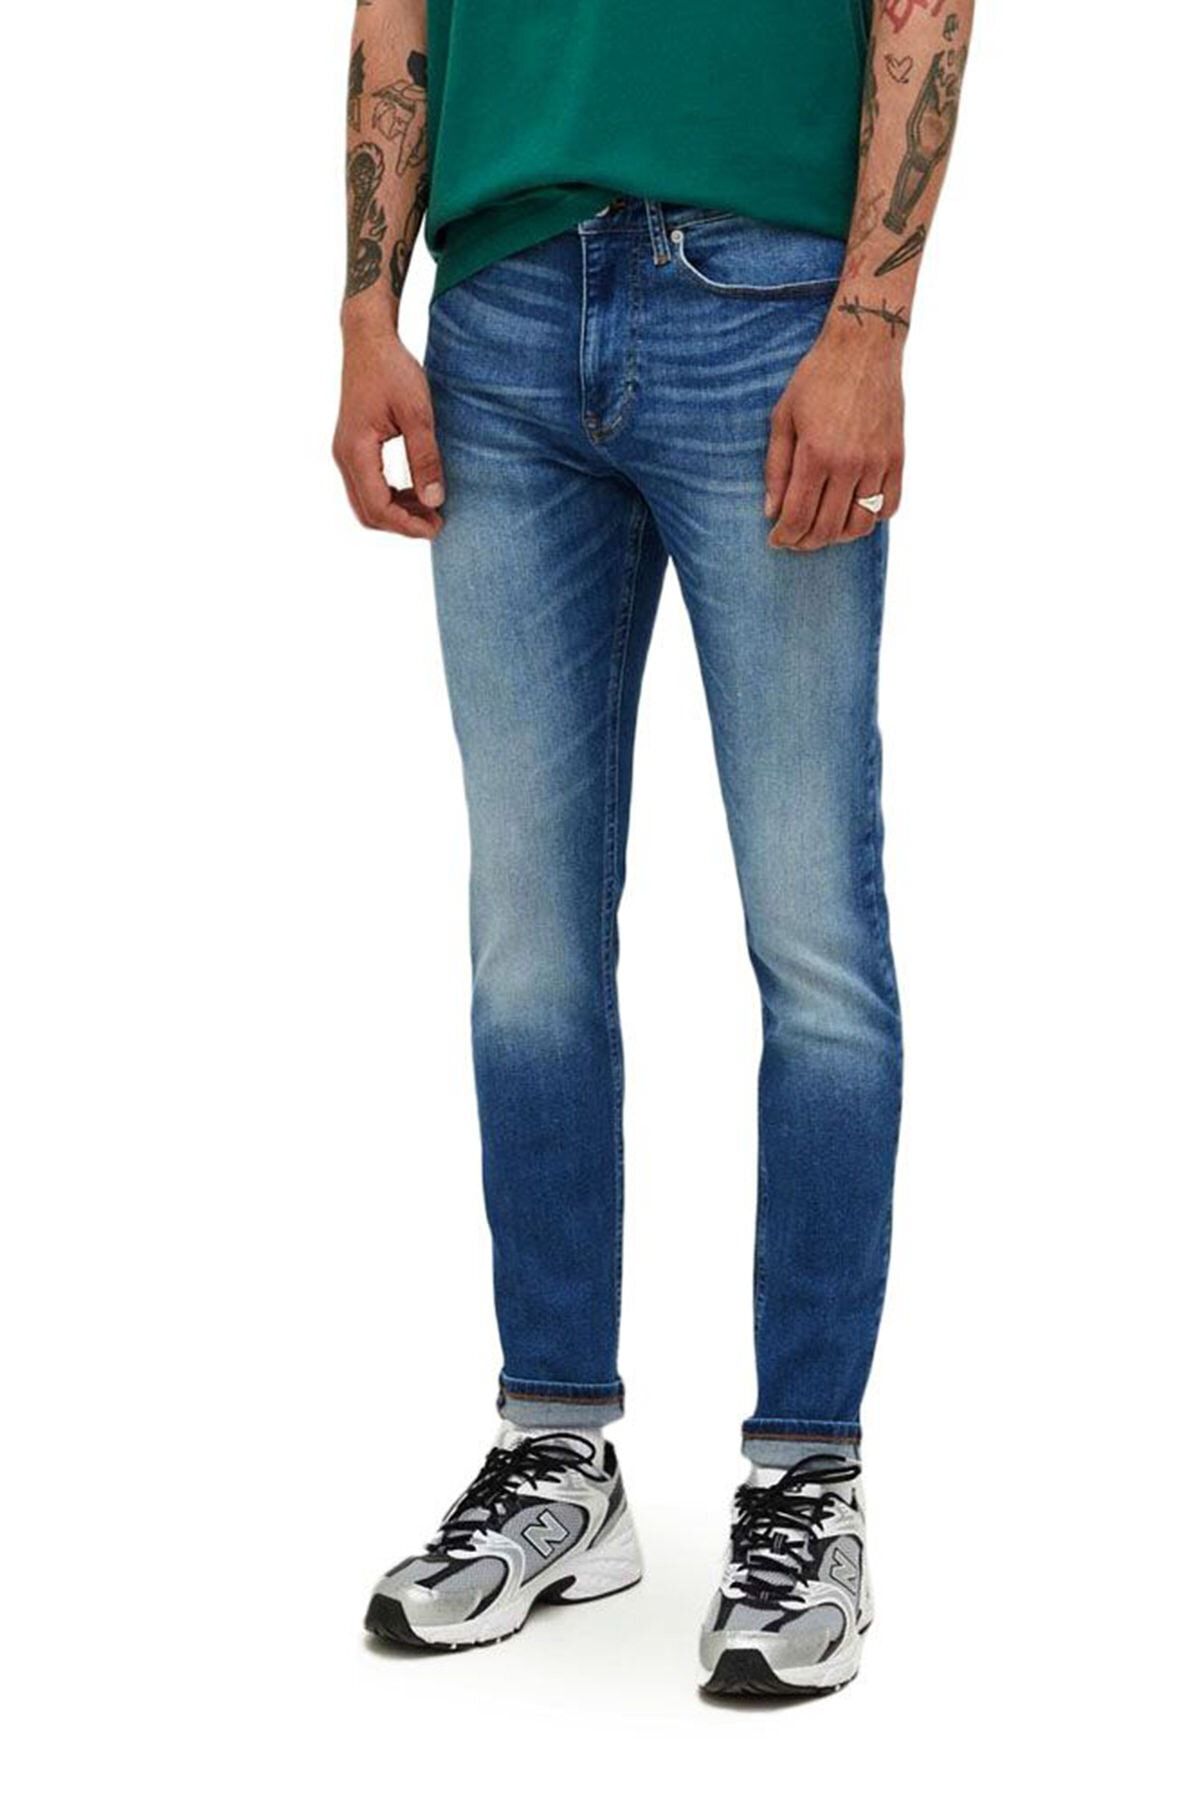 Tommy Jeans جین مردانه (کد مدل: DM0DM16638)